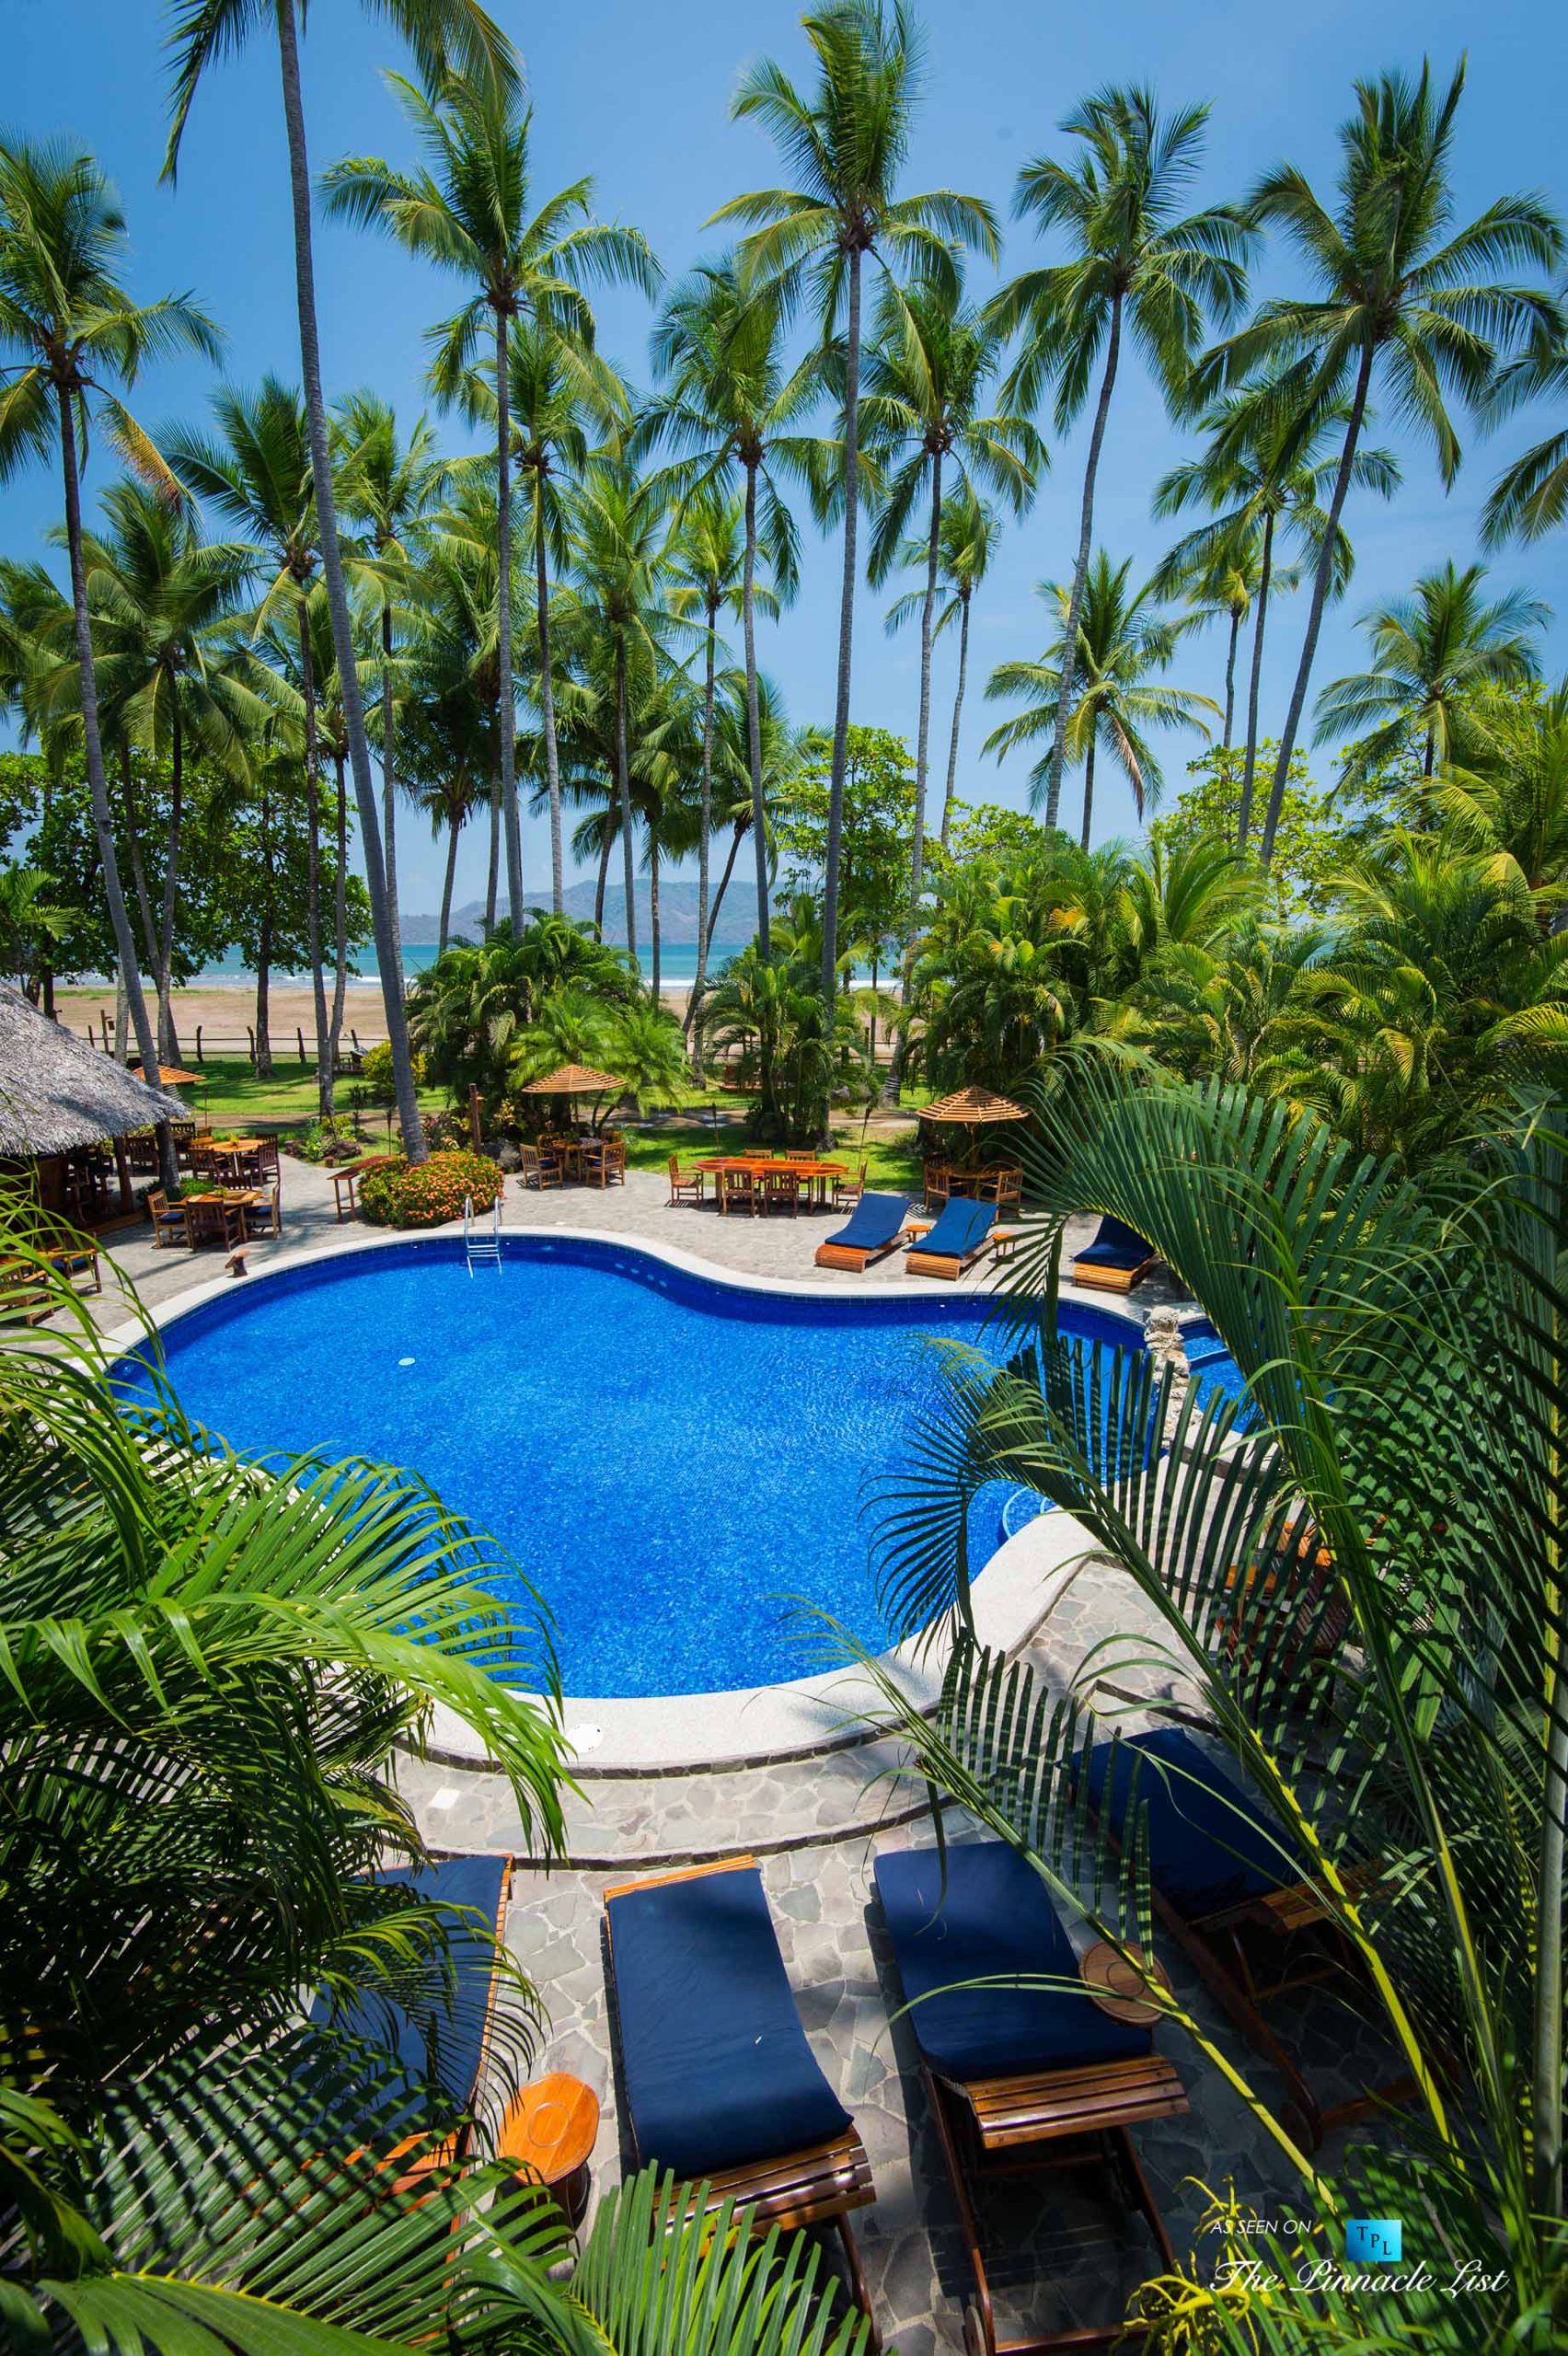 Tambor Tropical Beach Resort - Tambor, Puntarenas, Costa Rica - Tropical Pool